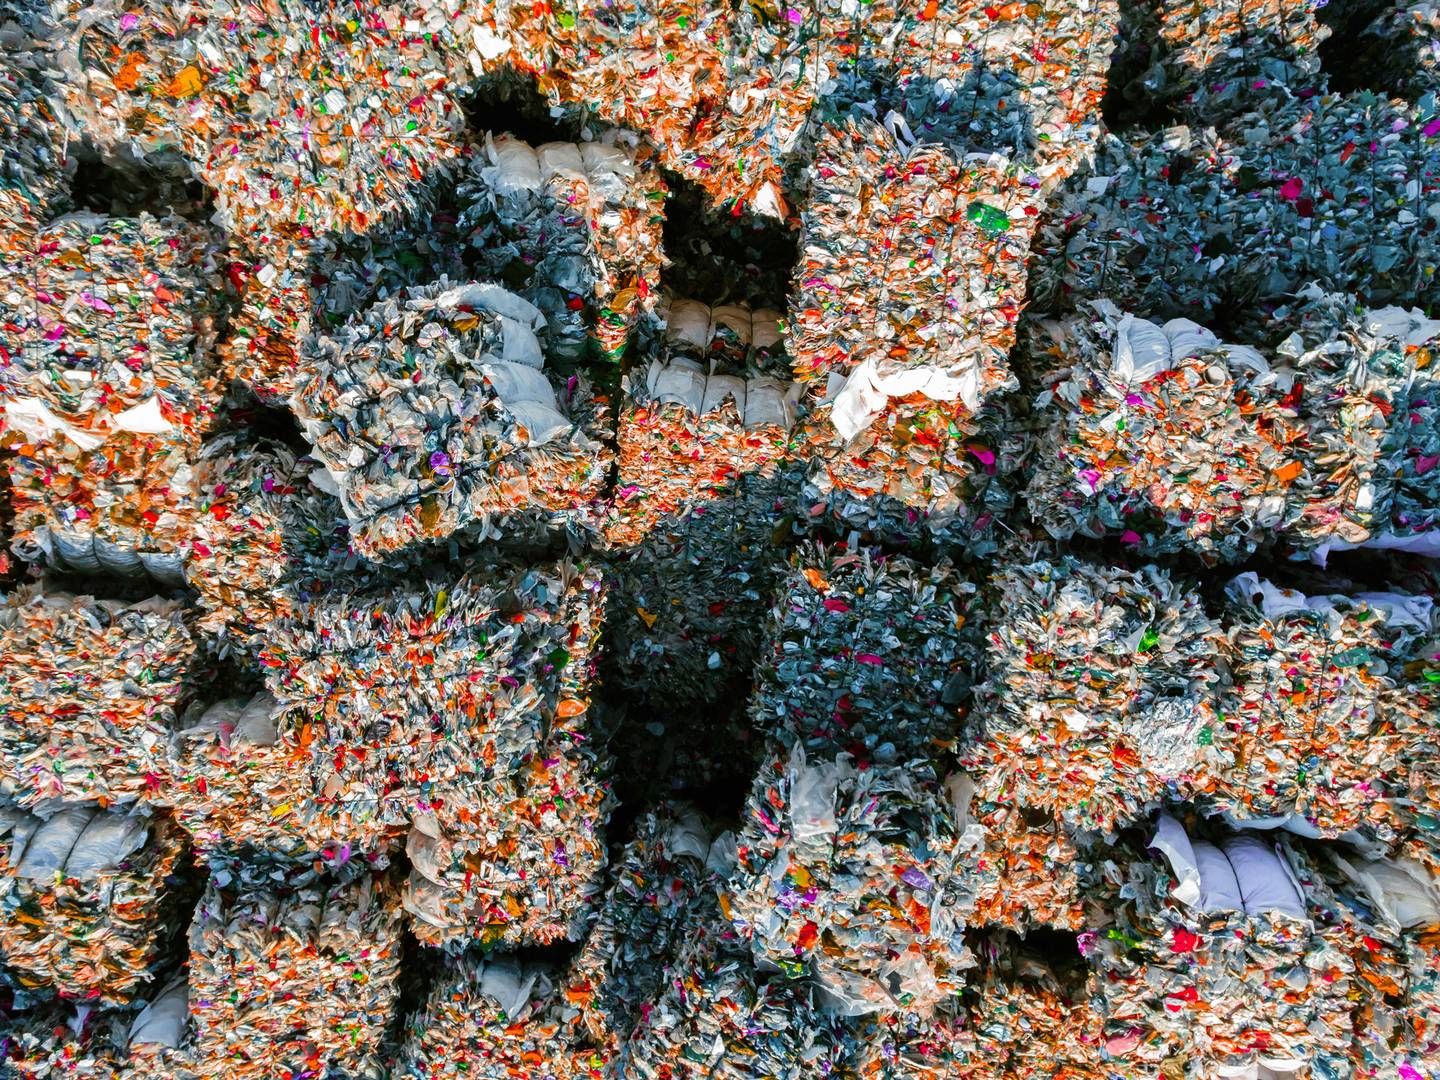 Når danske virksomheder bruger “genbrug” i flæng, er det i bedste fald en fejl og udtryk for uklar kommunikation, mener Silvie Østebø. | Photo: Getty Images